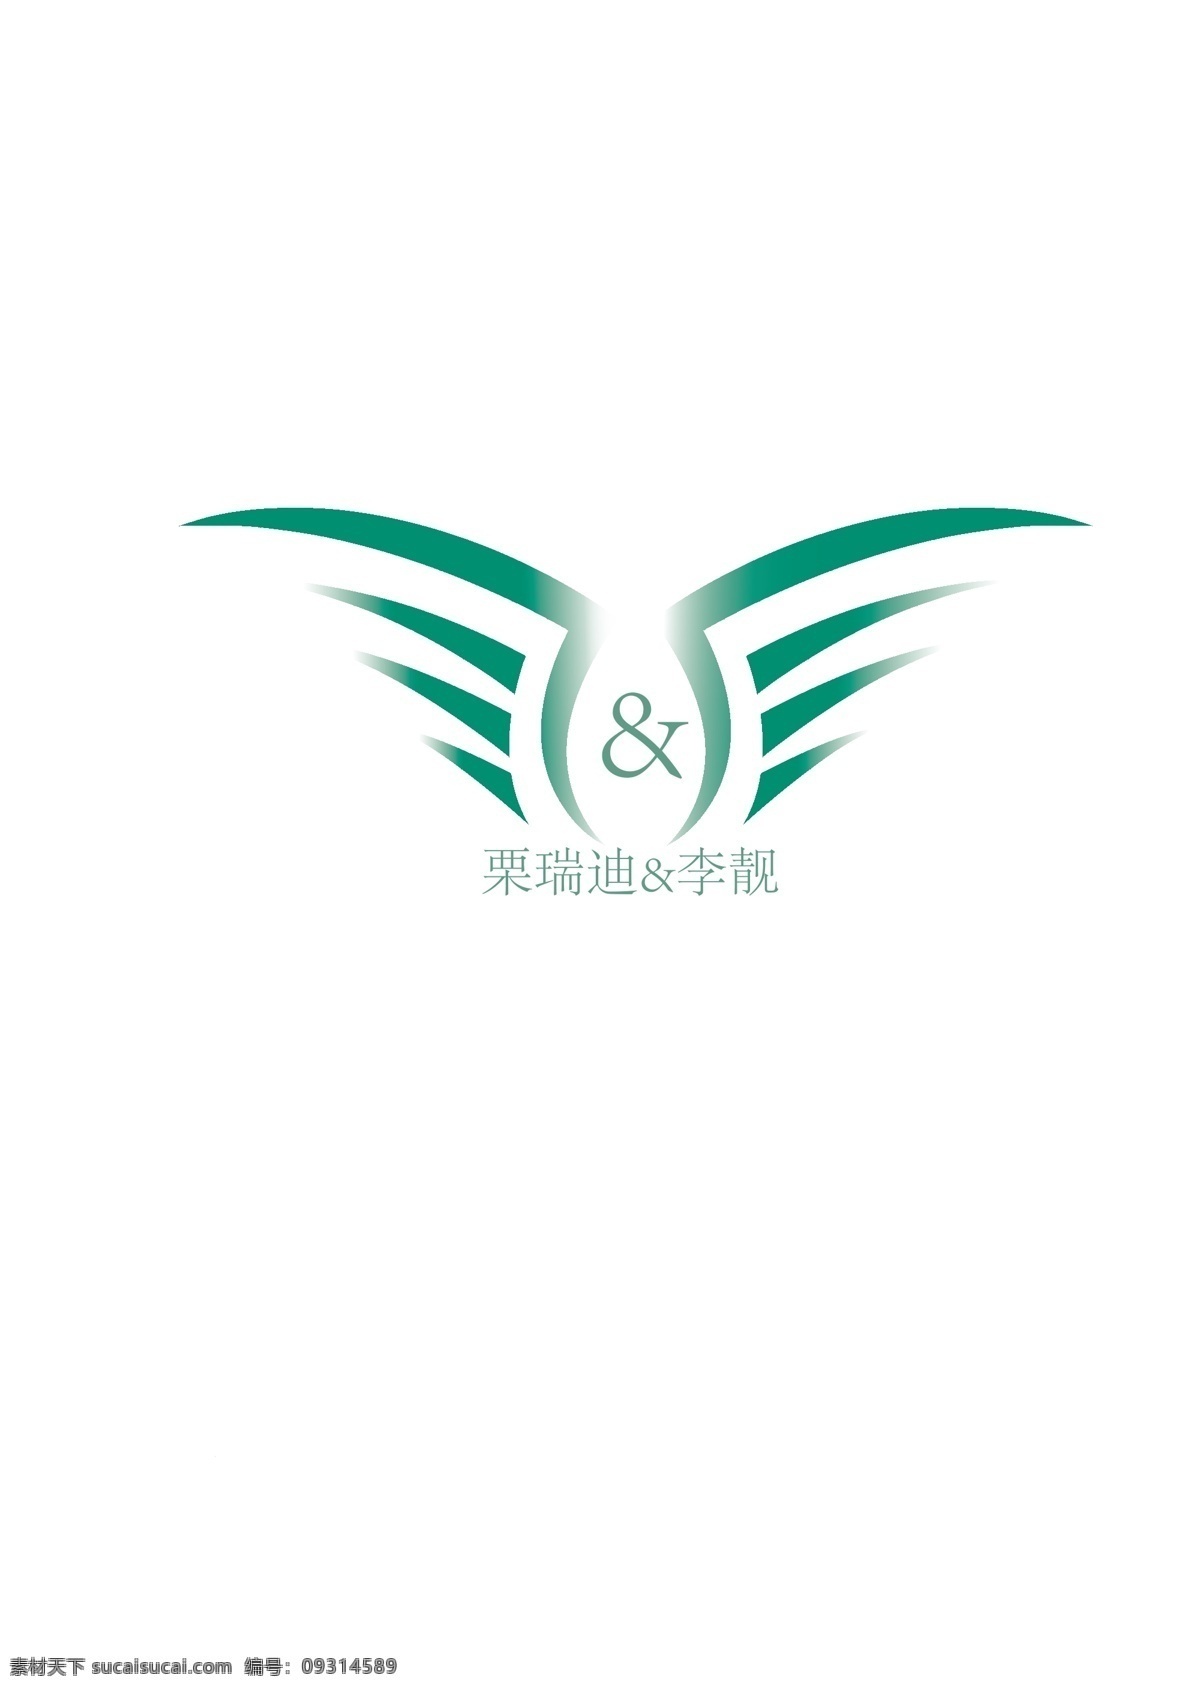 婚礼 广告 logo 绿色 翅膀 大气